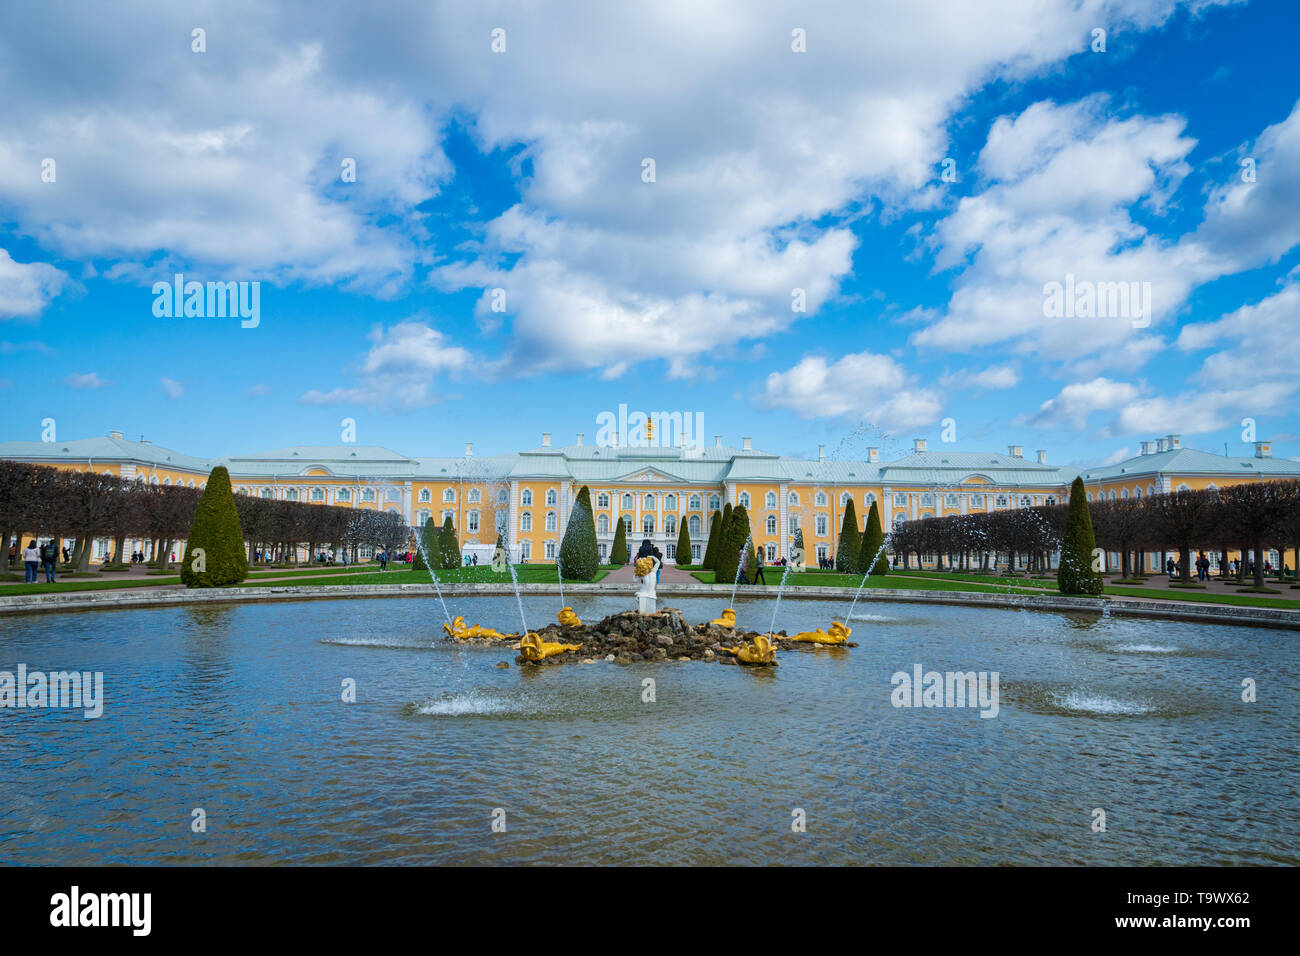 Saint Petersburg, Russie - Mai 2019 : fontaines de Peterhof palace et voir et les touristes qui visitent. Le Peterhof Palace est un endroit populaire pour le tourisme. Banque D'Images